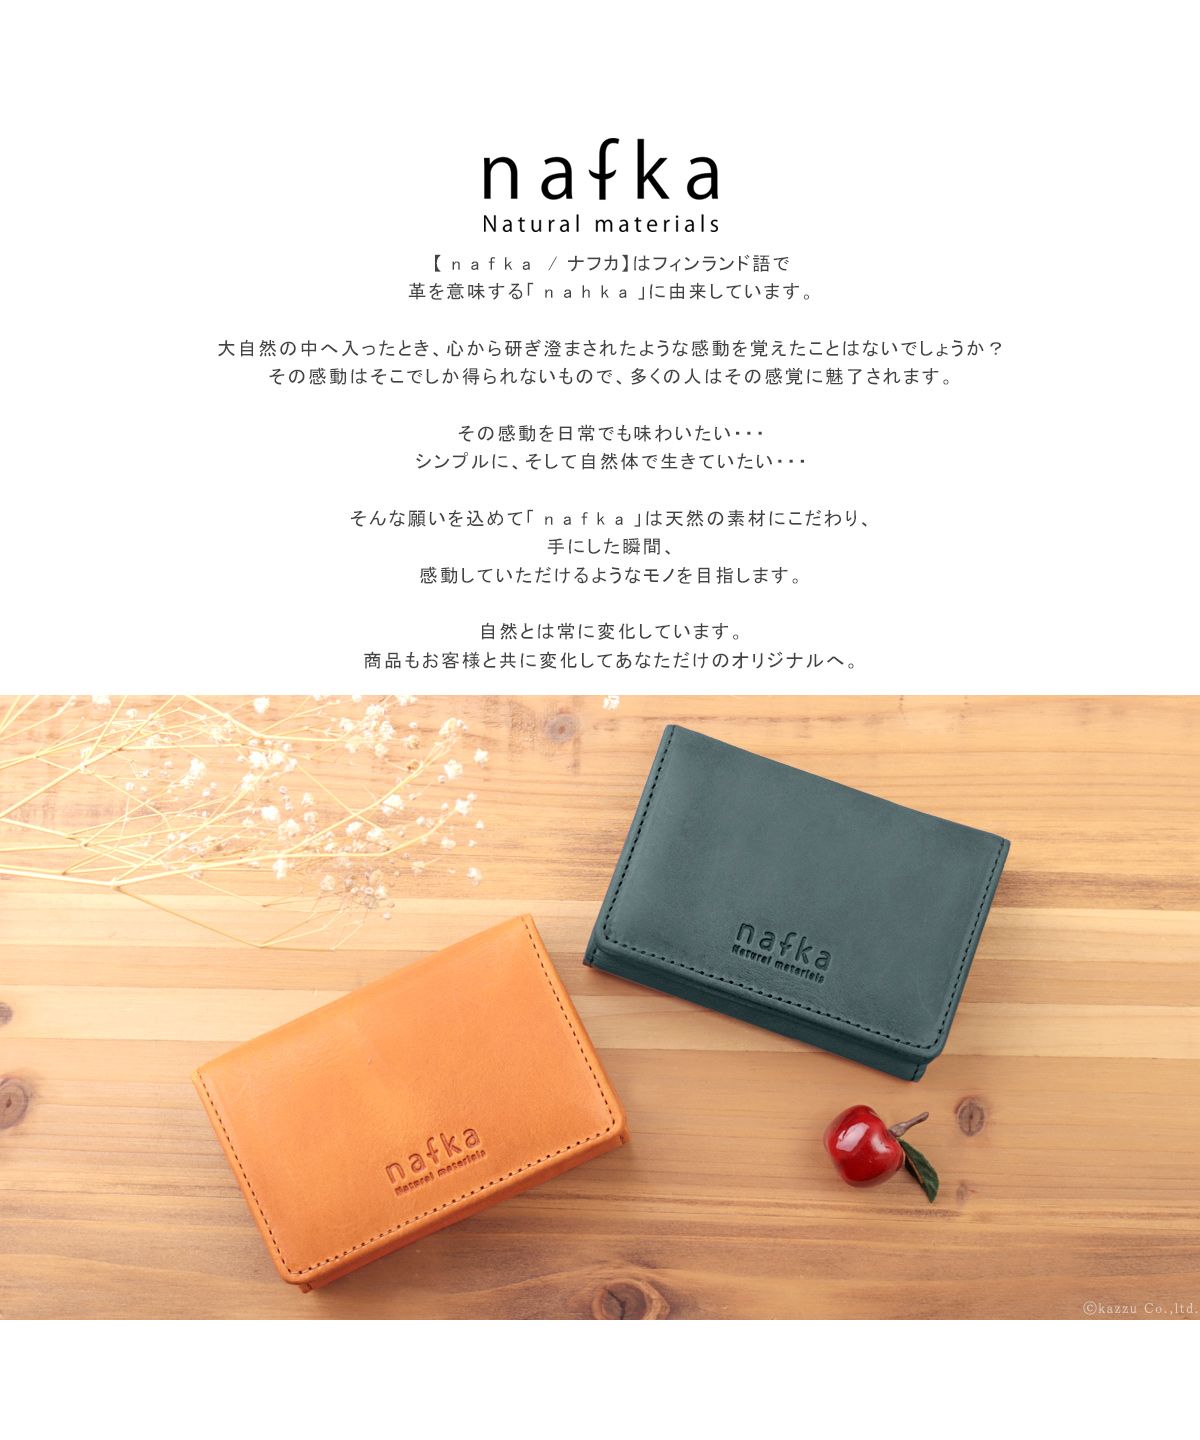 【色: キャメル】[ナフカ] nafka 財布 レディース 三つ折り 本革 モス